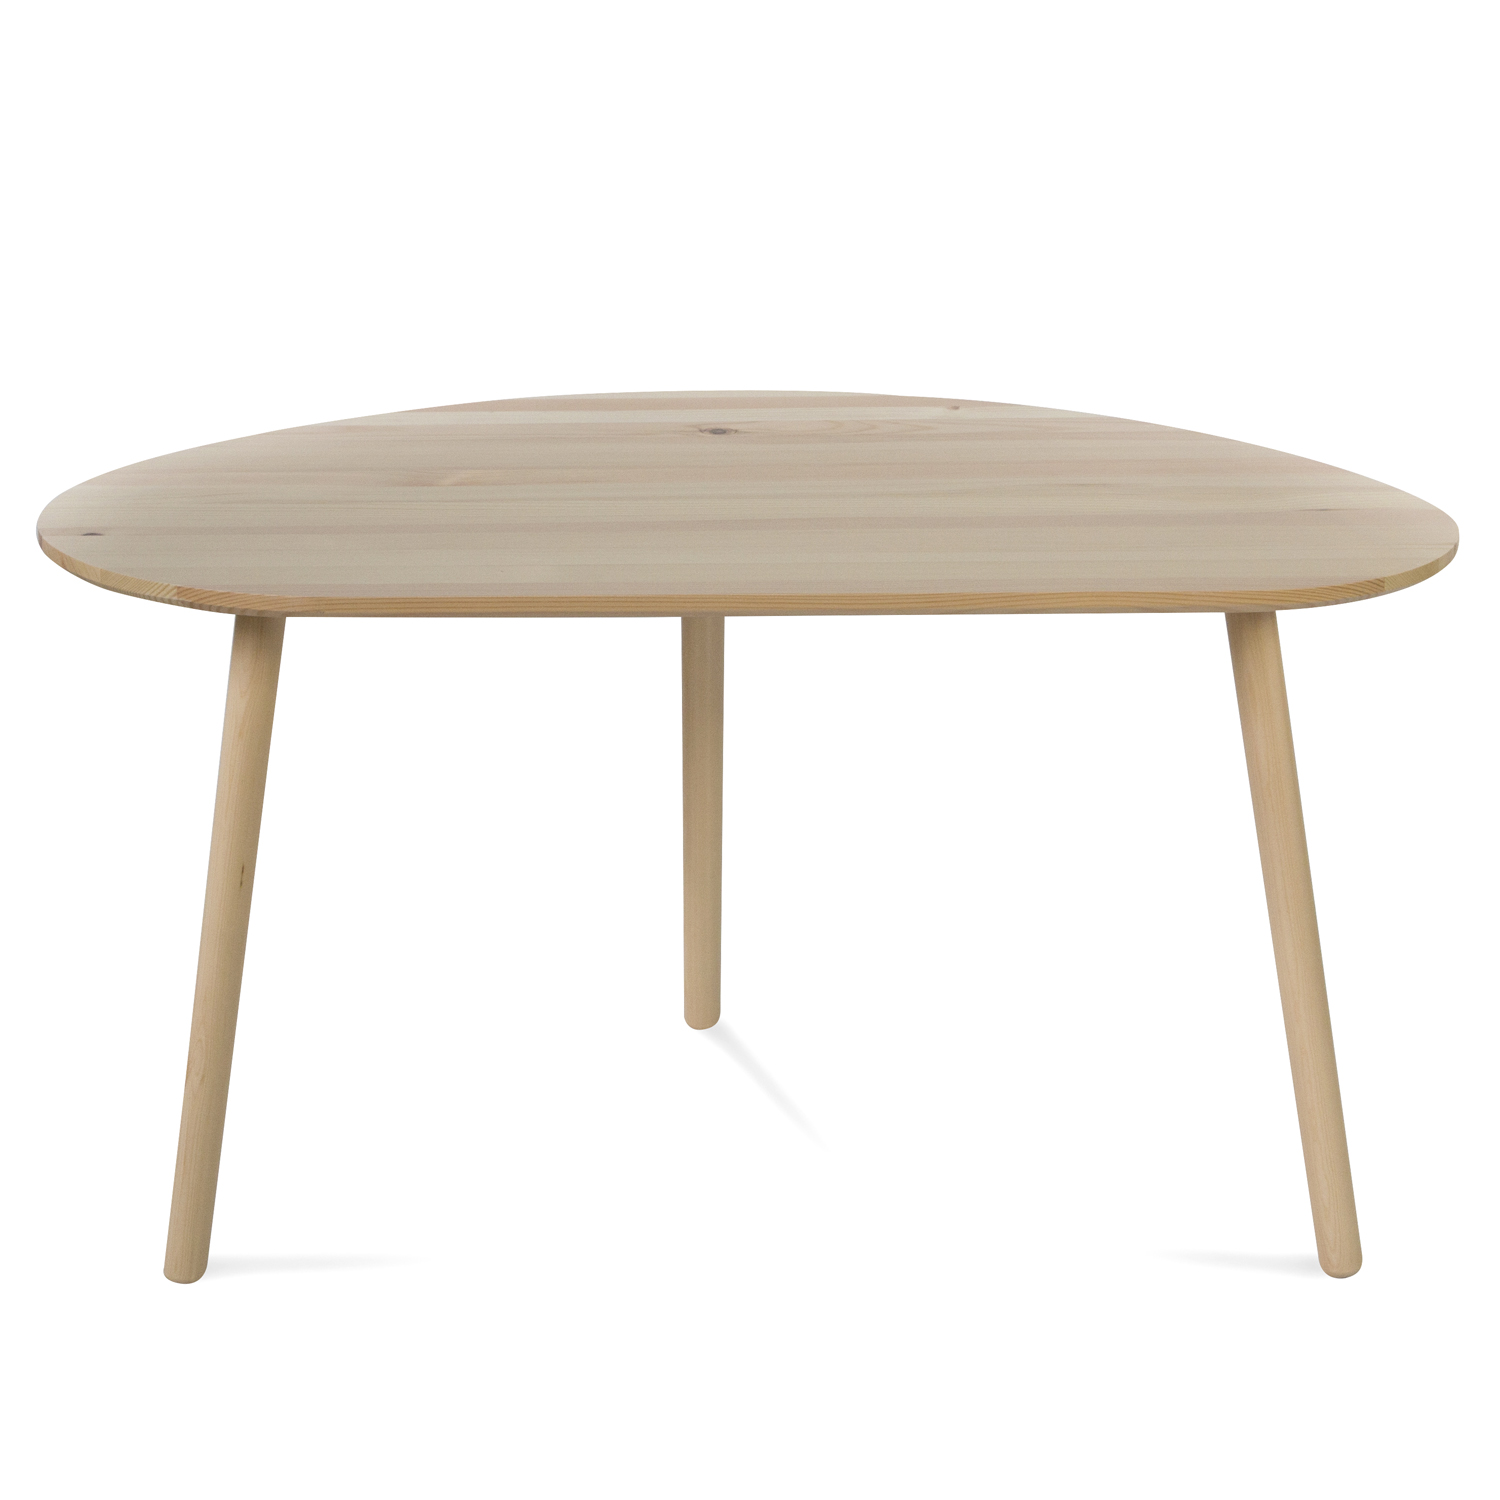 Beistelltisch Couchtisch Natur Holztisch Nierentisch Tisch Holz Kiefer